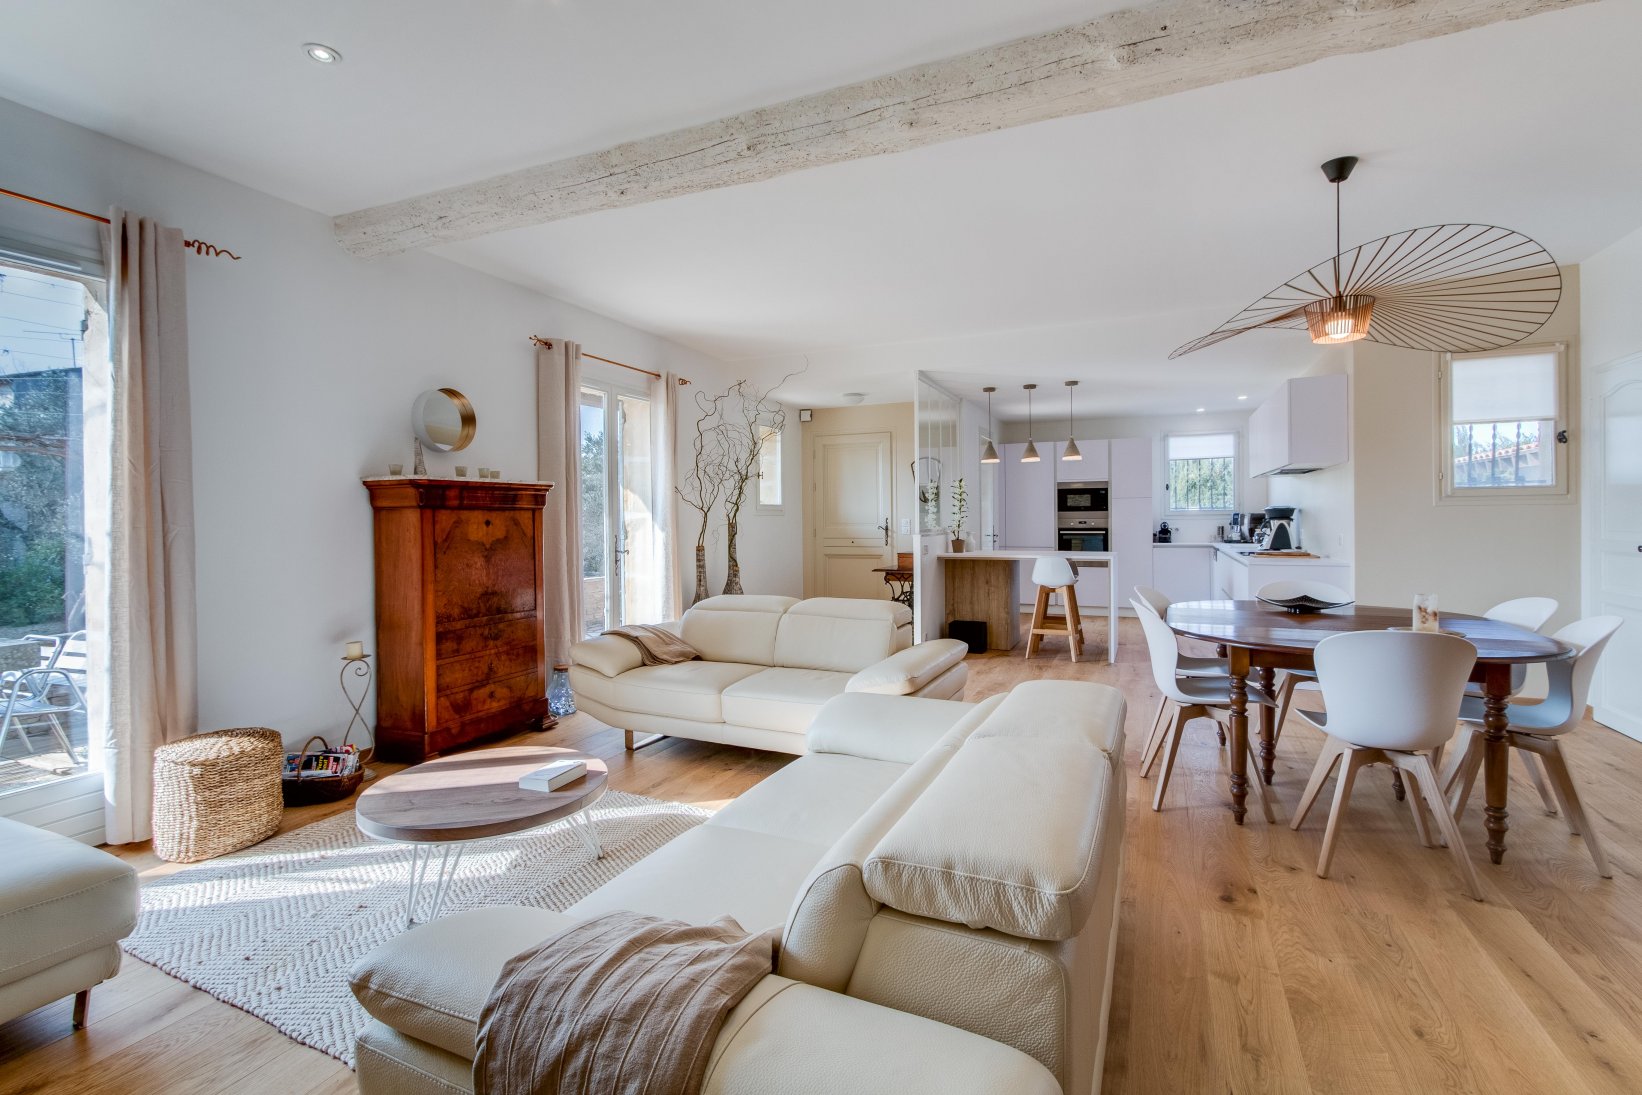 Décoration cuisine salon séjour décoration d'intérieur Arti's Design villa Pont de Crau Bouches du Rhône